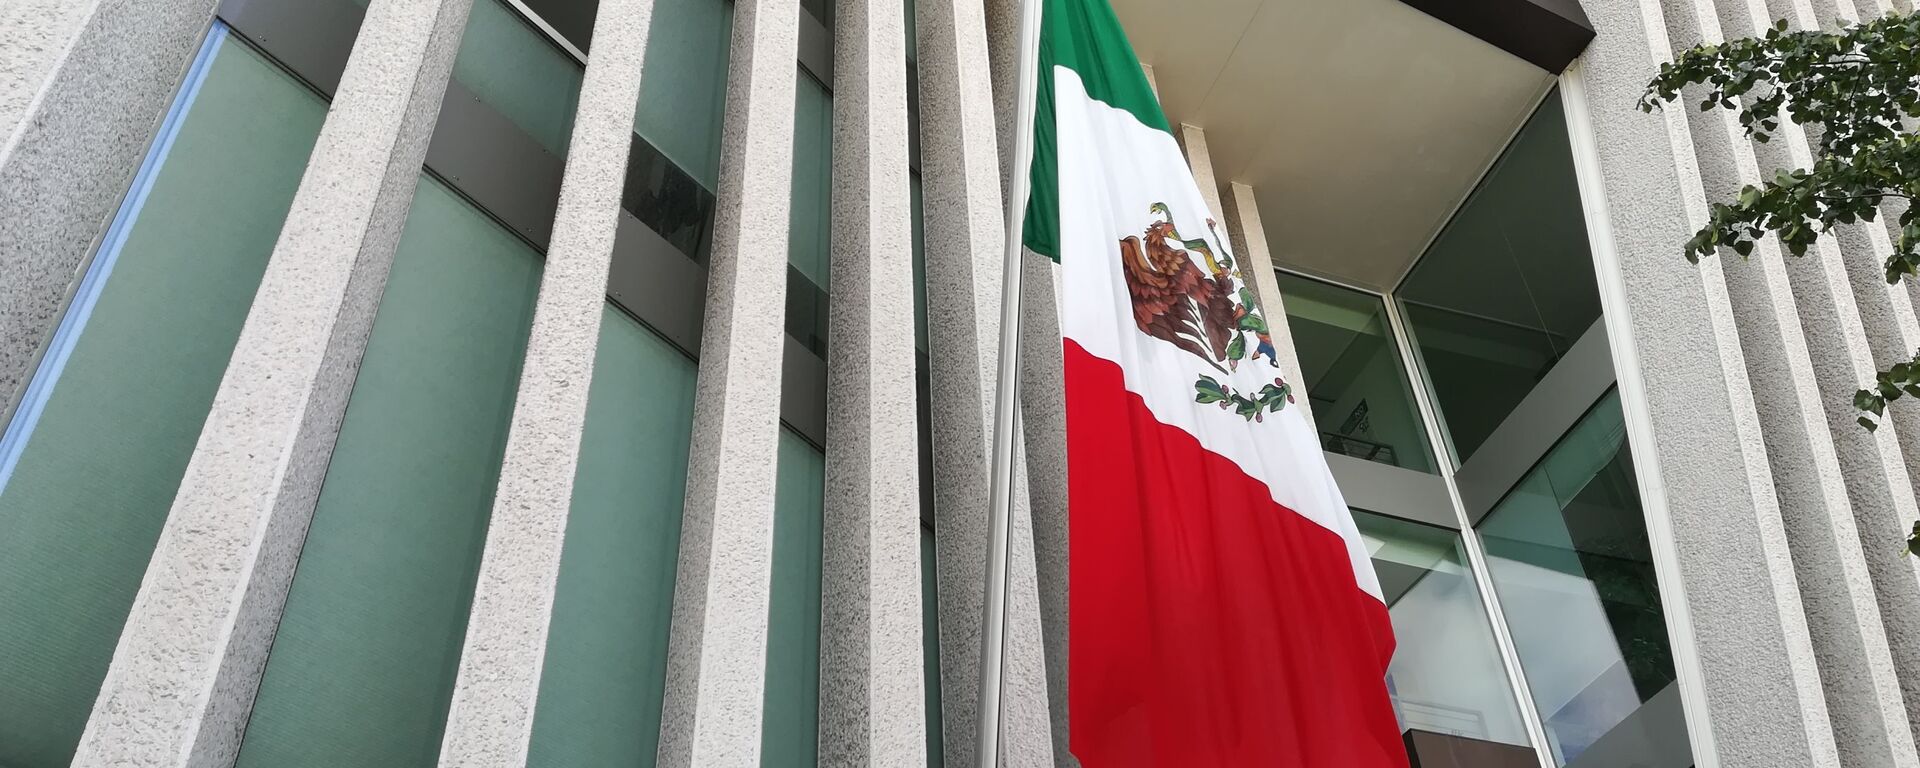 Bandera de México - Sputnik Mundo, 1920, 23.02.2021